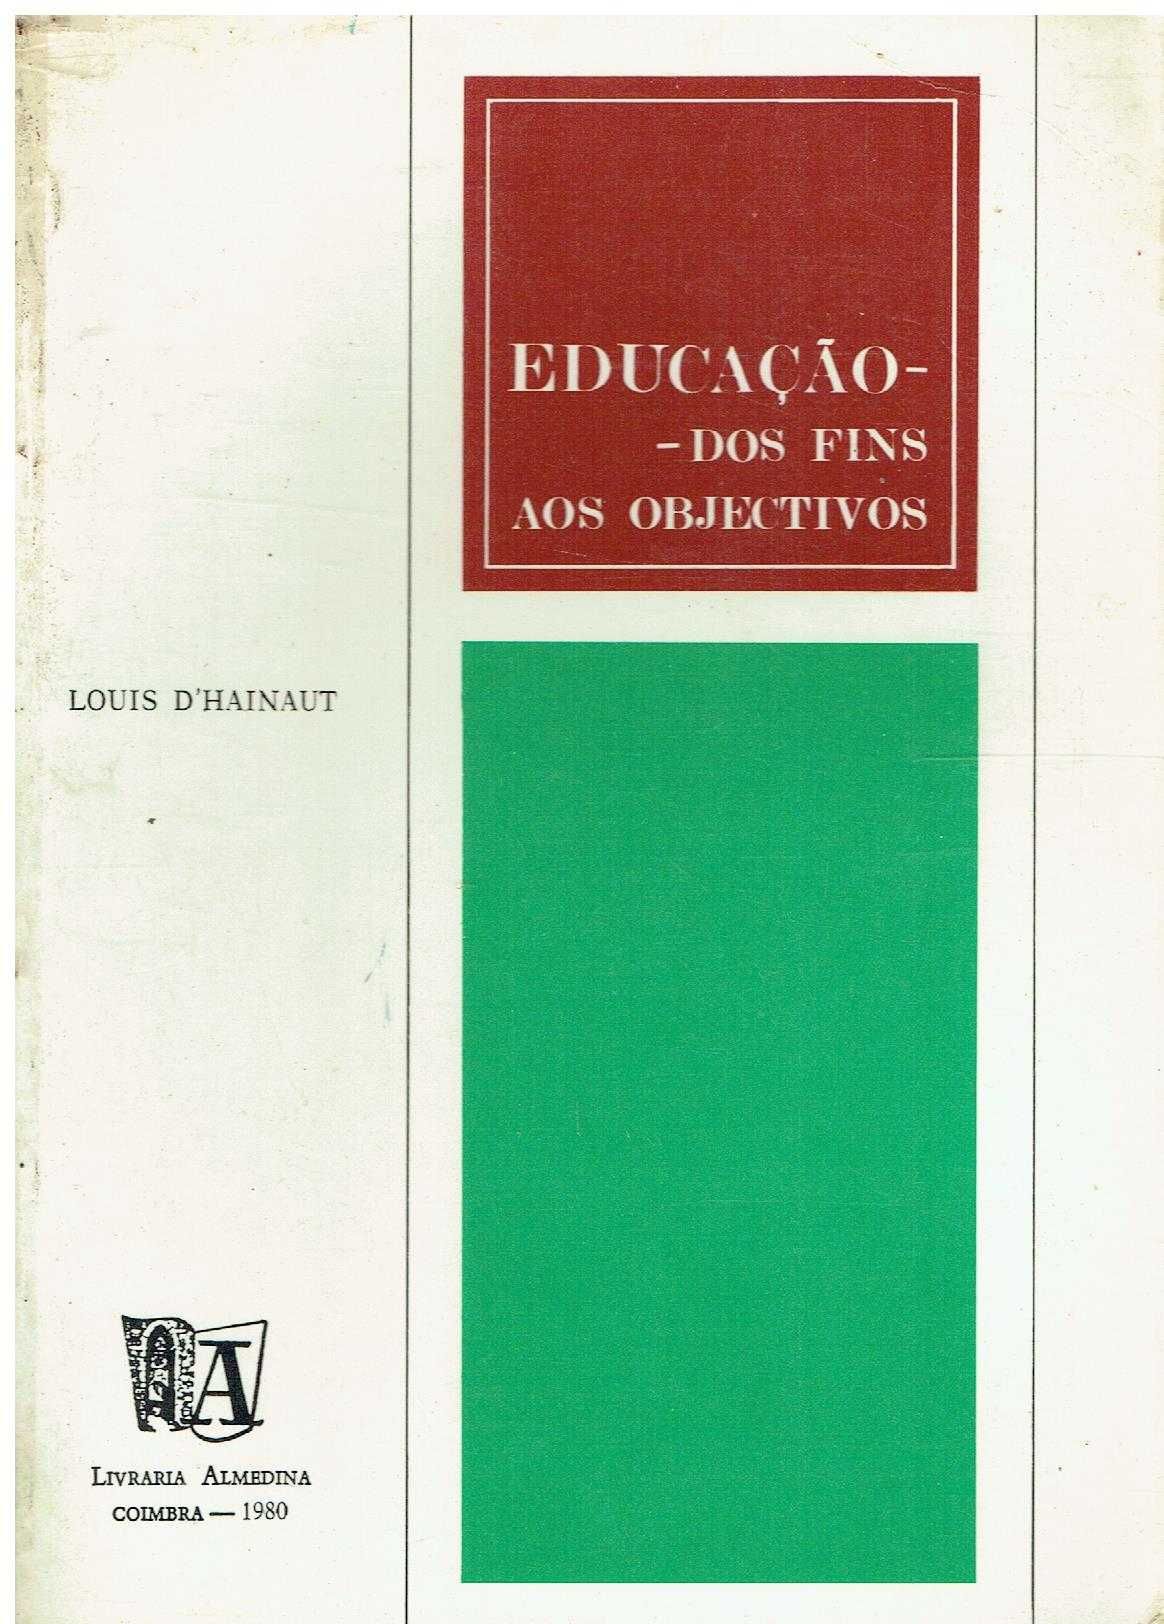 7962 - Livros sobre Educação